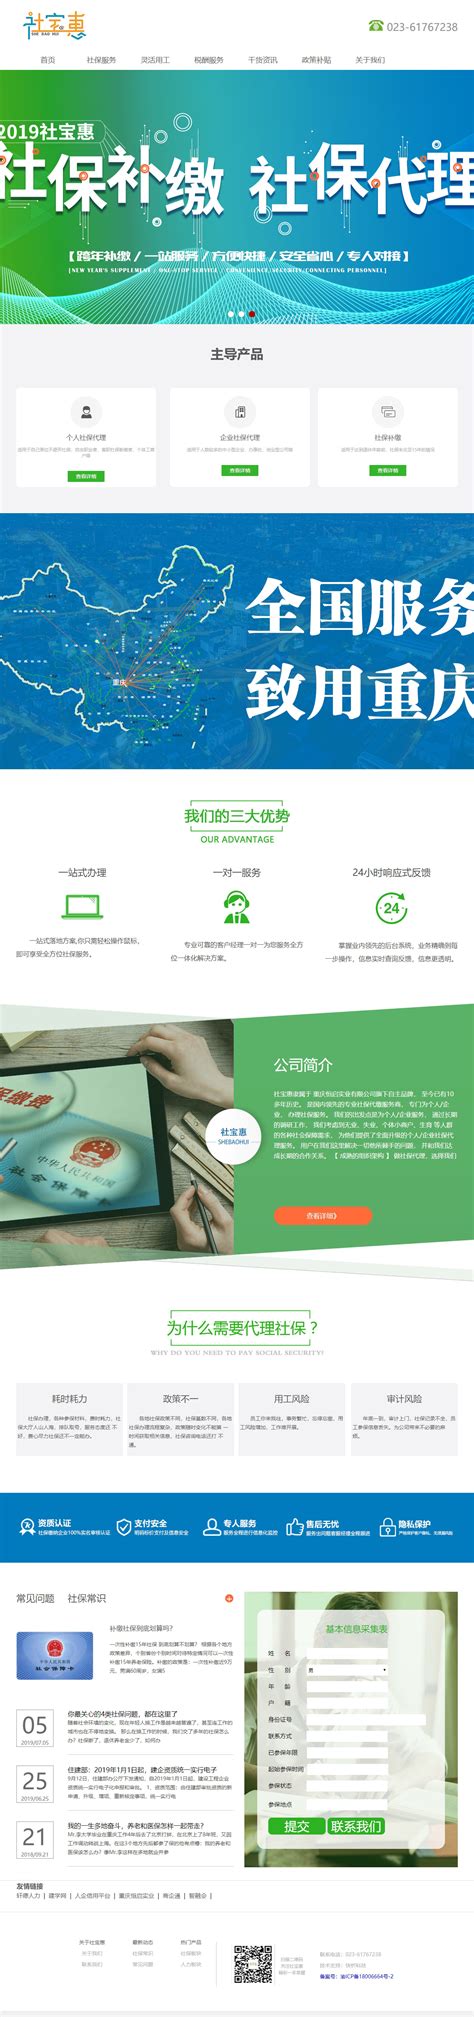 重庆网站制作企业